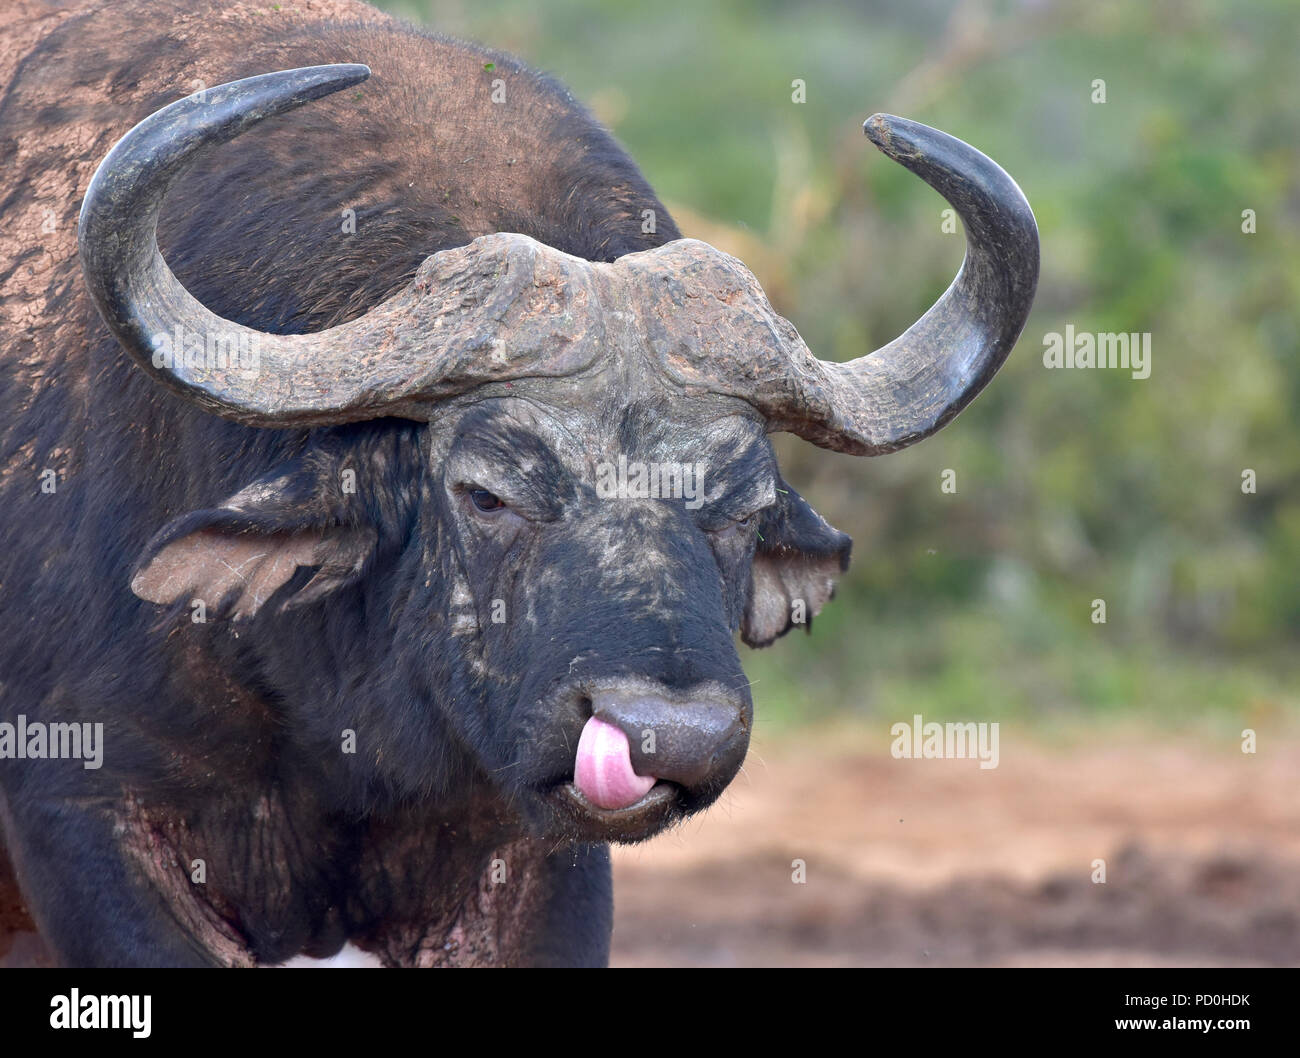 Südafrika, ein fantastisches Reiseziel Dritter und Erster Welt gemeinsam zu erleben. Buffalo bull Nasenlöcher sauber lecken mit der Zunge. Stockfoto